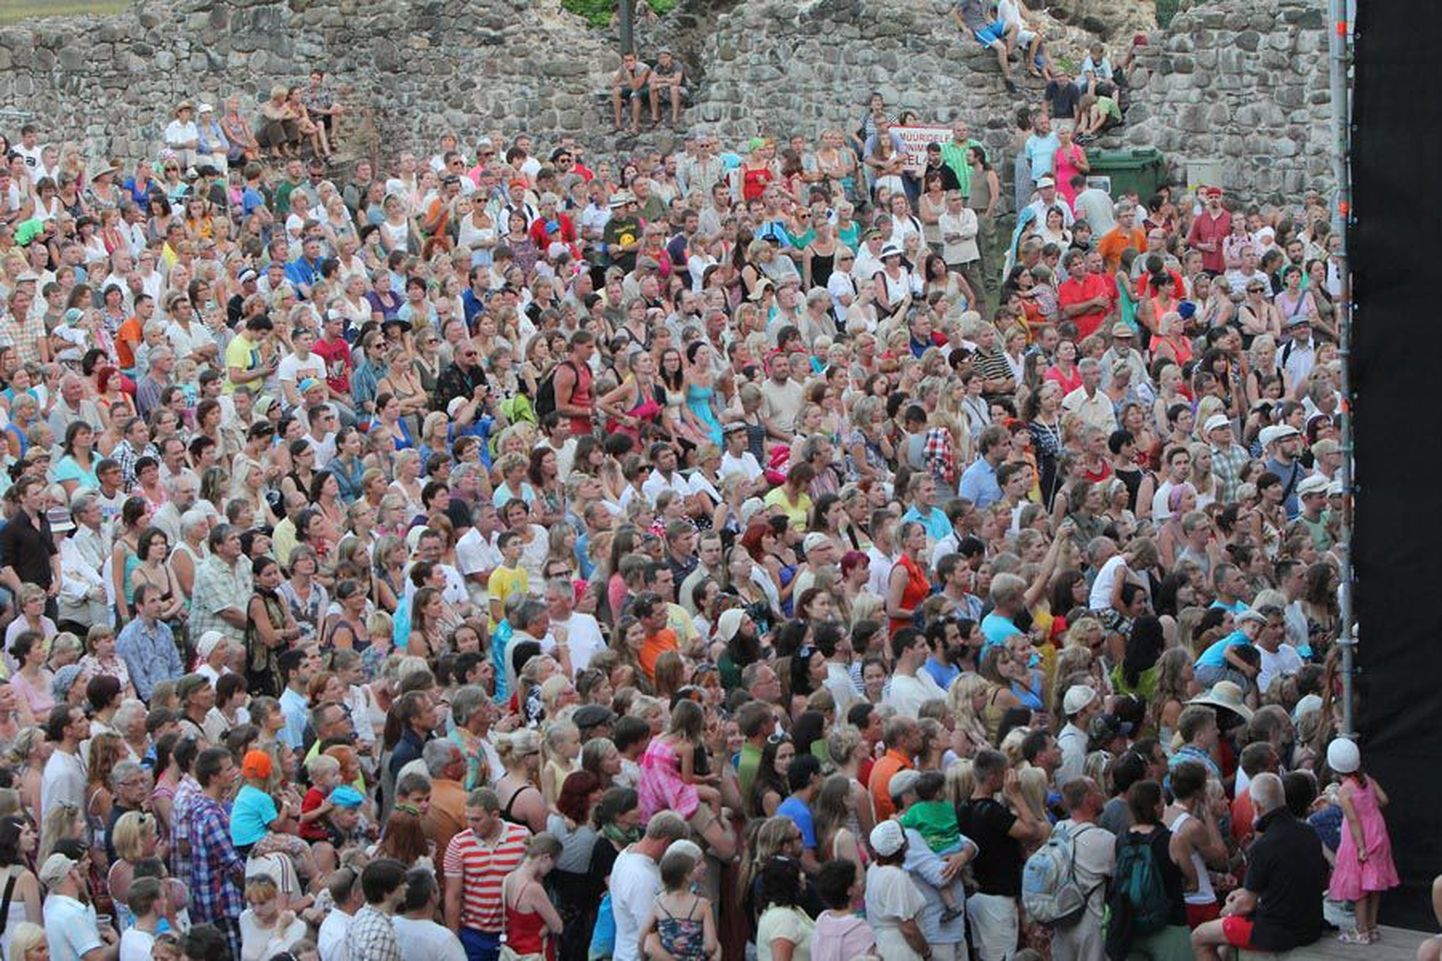 Viljandi pärimusmuusika festival on üks Eesti rahvarohkemaid festivale. Pilt on tehtud mullusel peol.